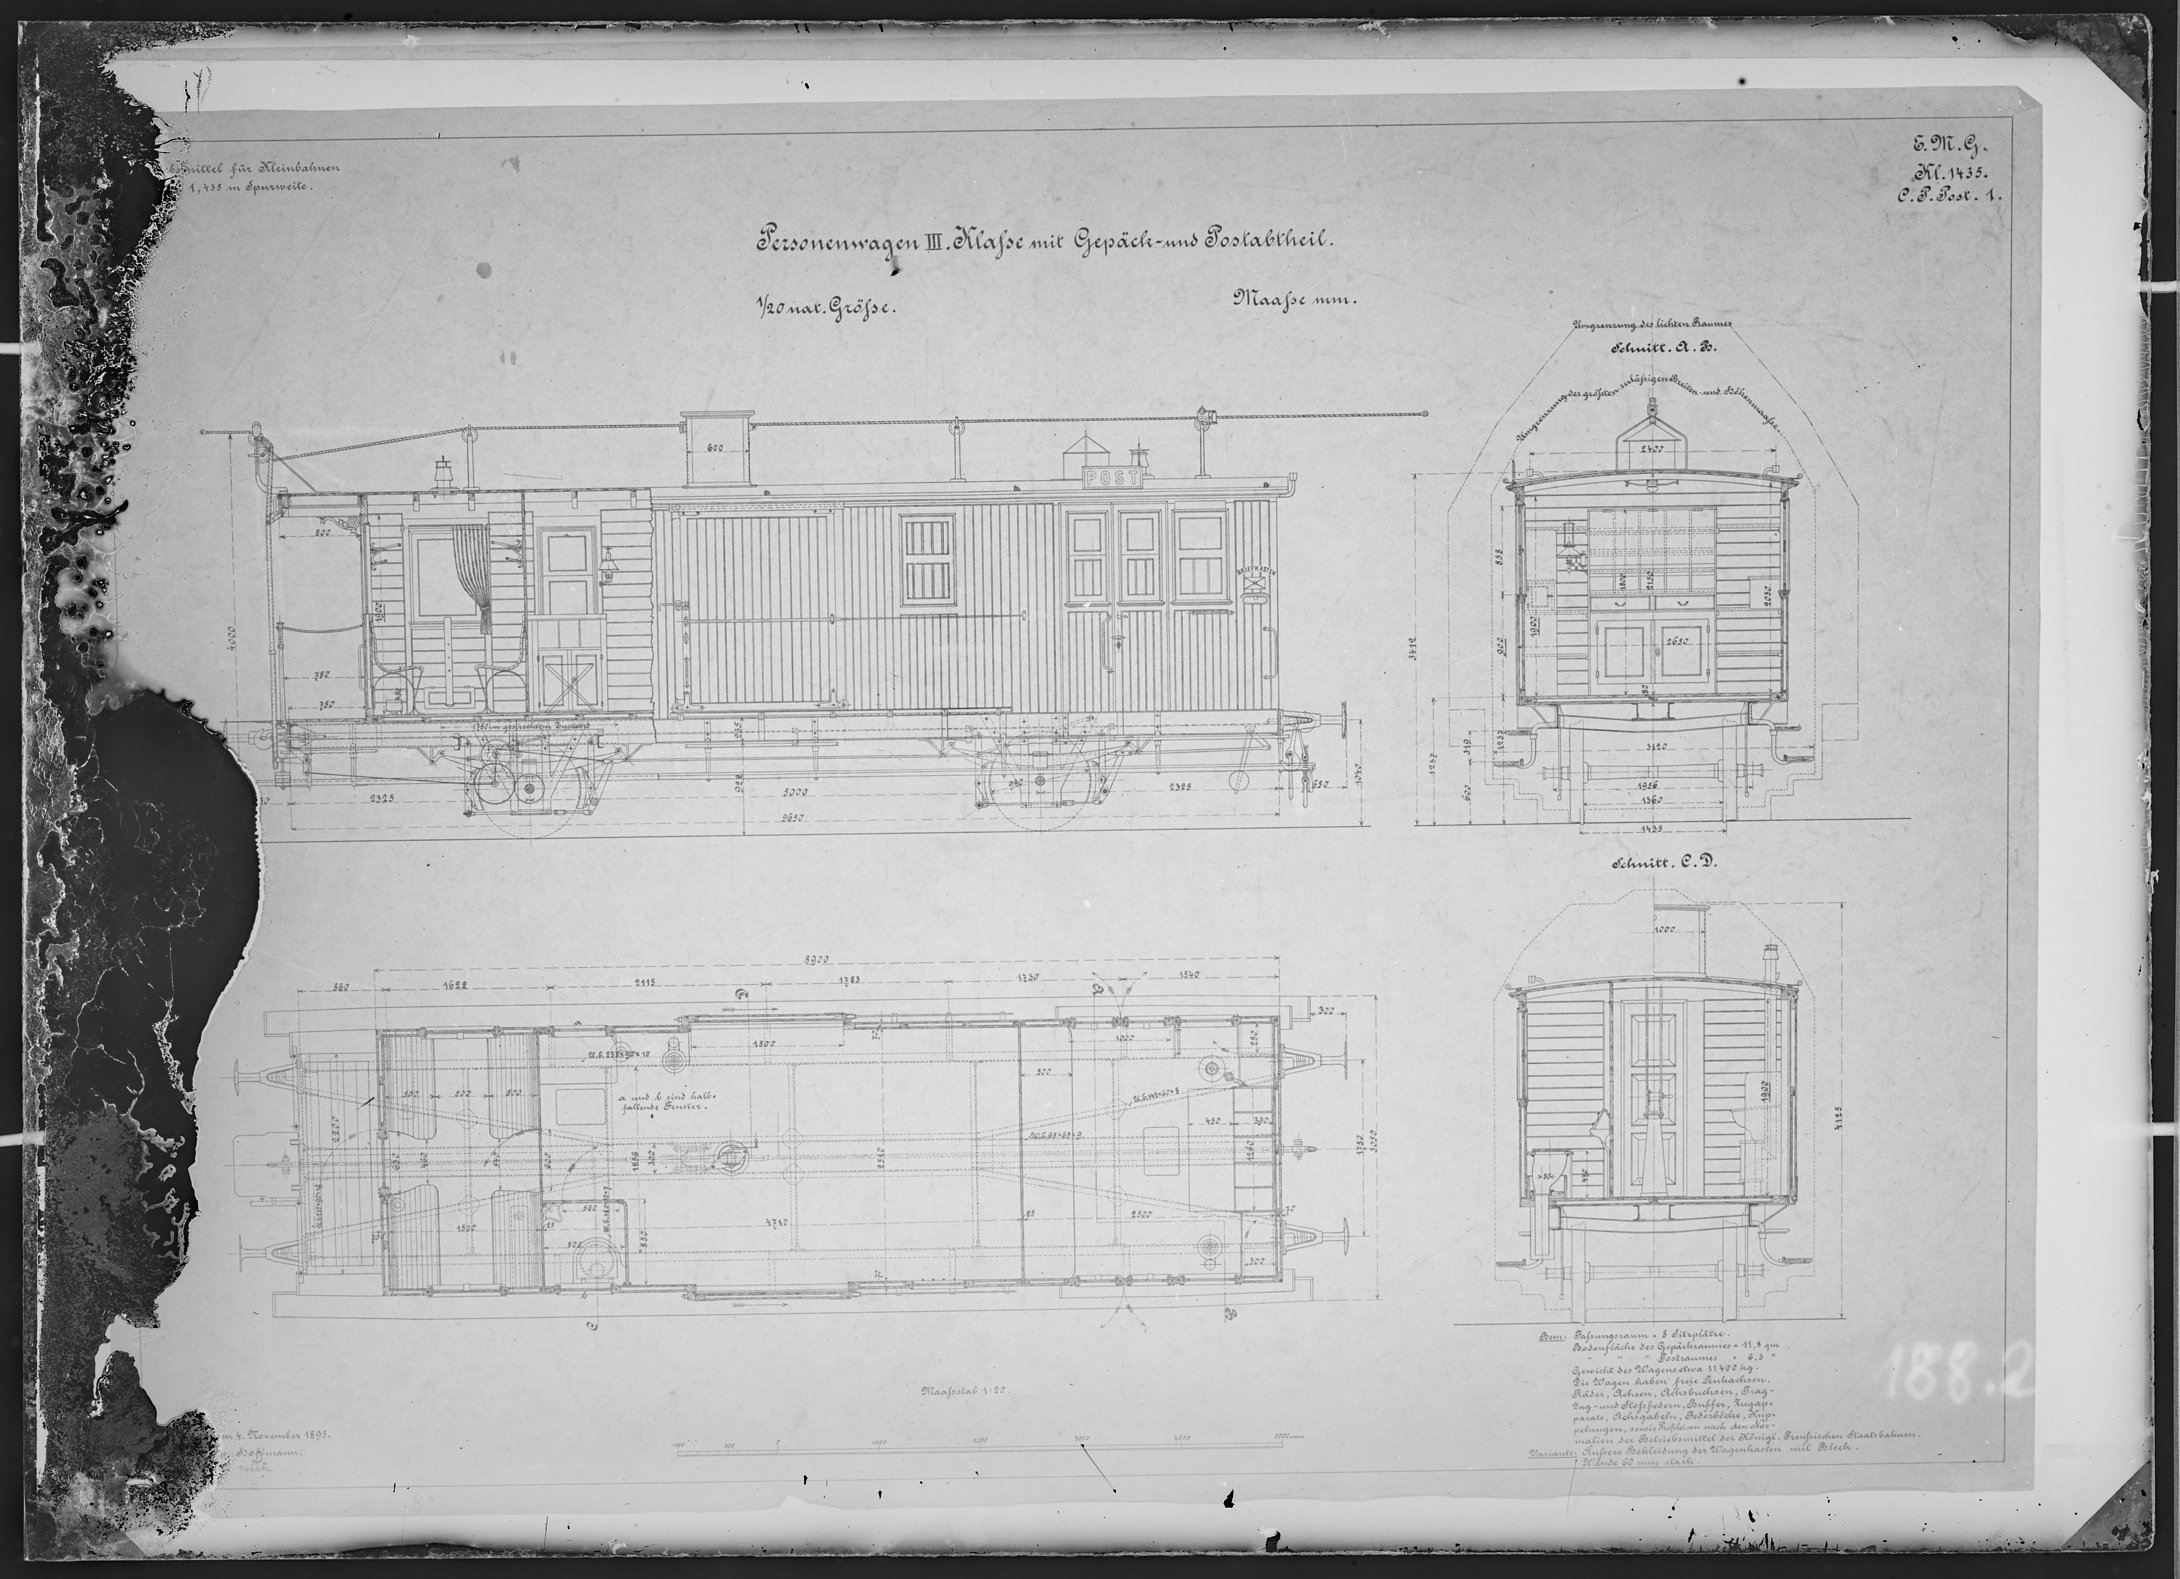 Fotografie: Maßzeichnung eines Personenwagens dritter Klasse mit Gepäck- und Postabteil für Kleinbahn, Maßstab 1:20 (Spurweite: 1435 mm), 1895. (Verkehrsmuseum Dresden CC BY-NC-SA)